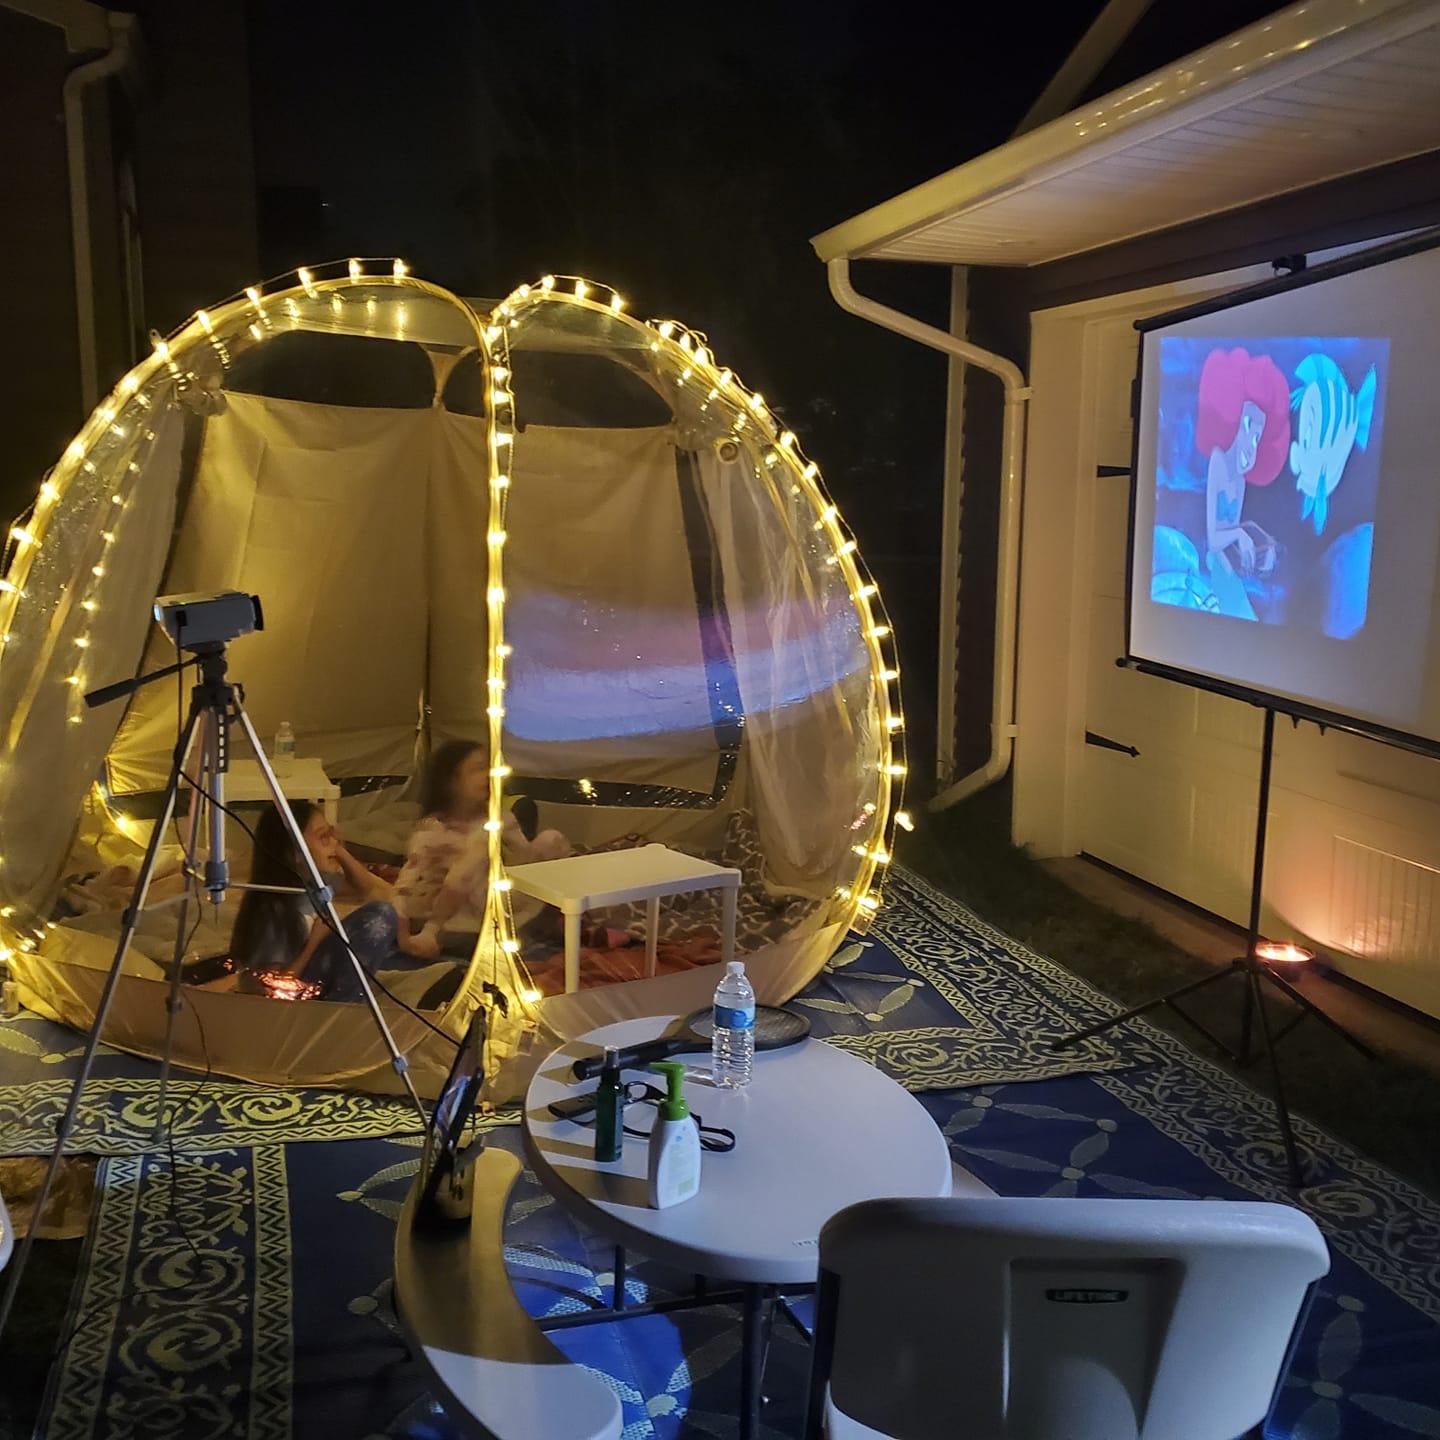 alvantor bubble tent is clear enough as an  outdoor cinema on backyard, garden or patio